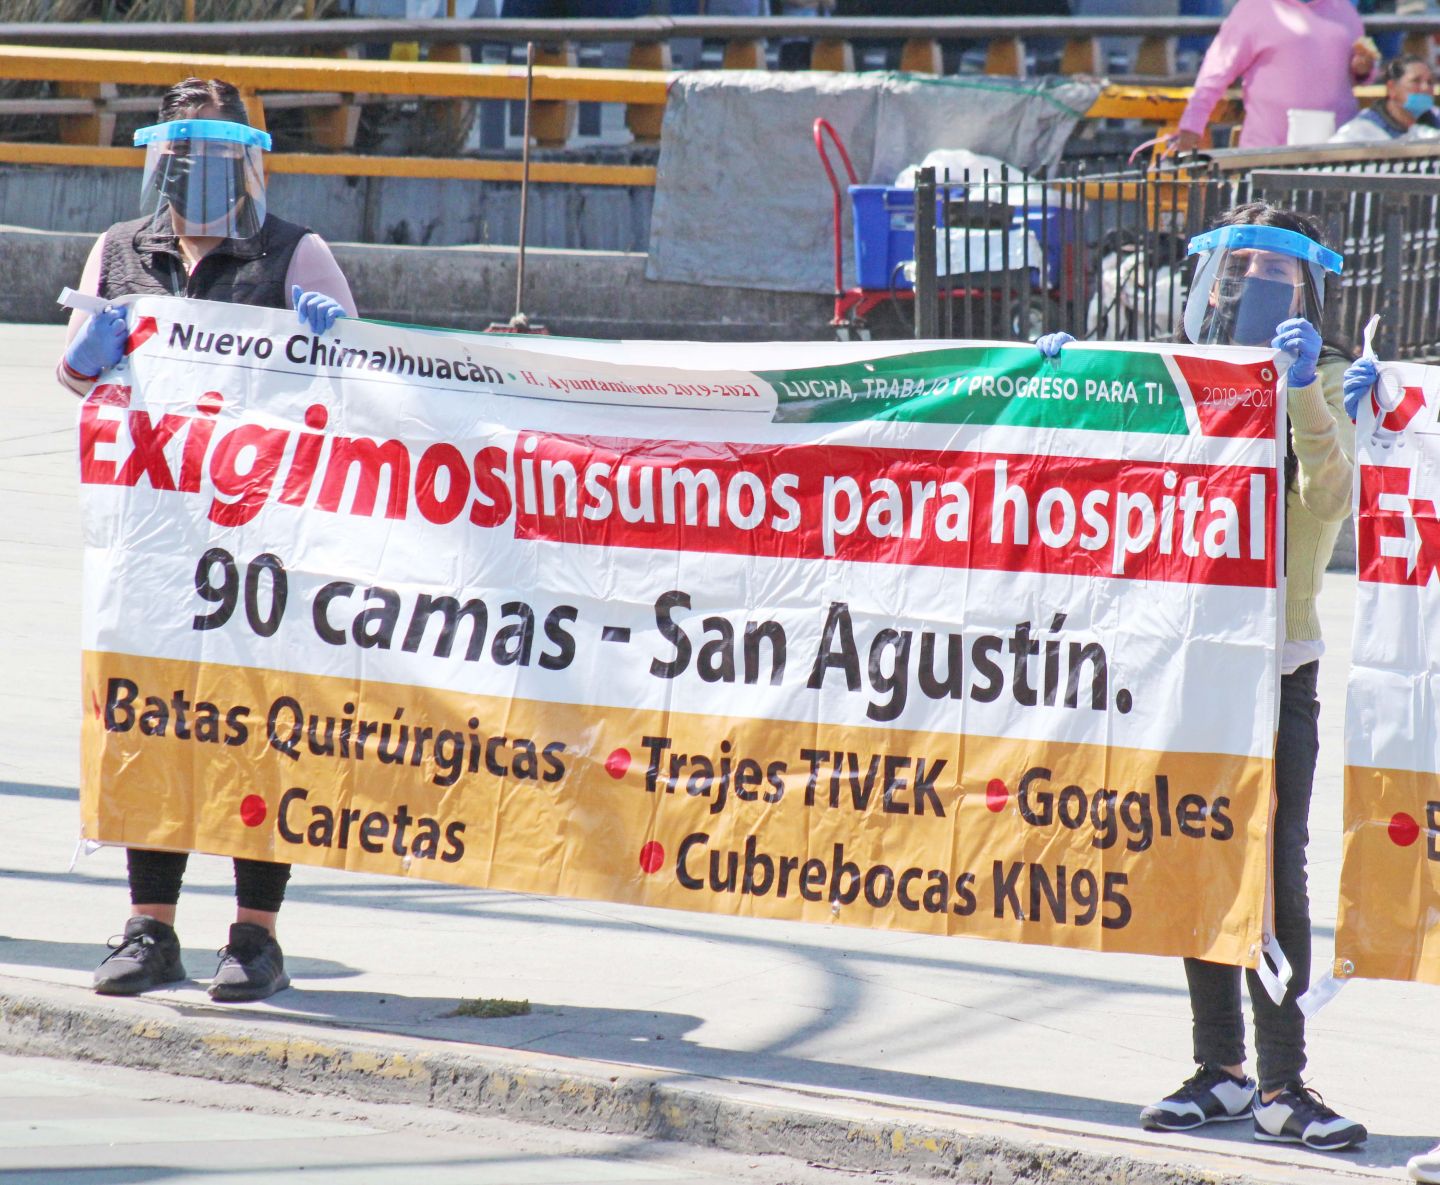 Chimalhuacán exige insumos para el hospital Covid "90 Camas" 